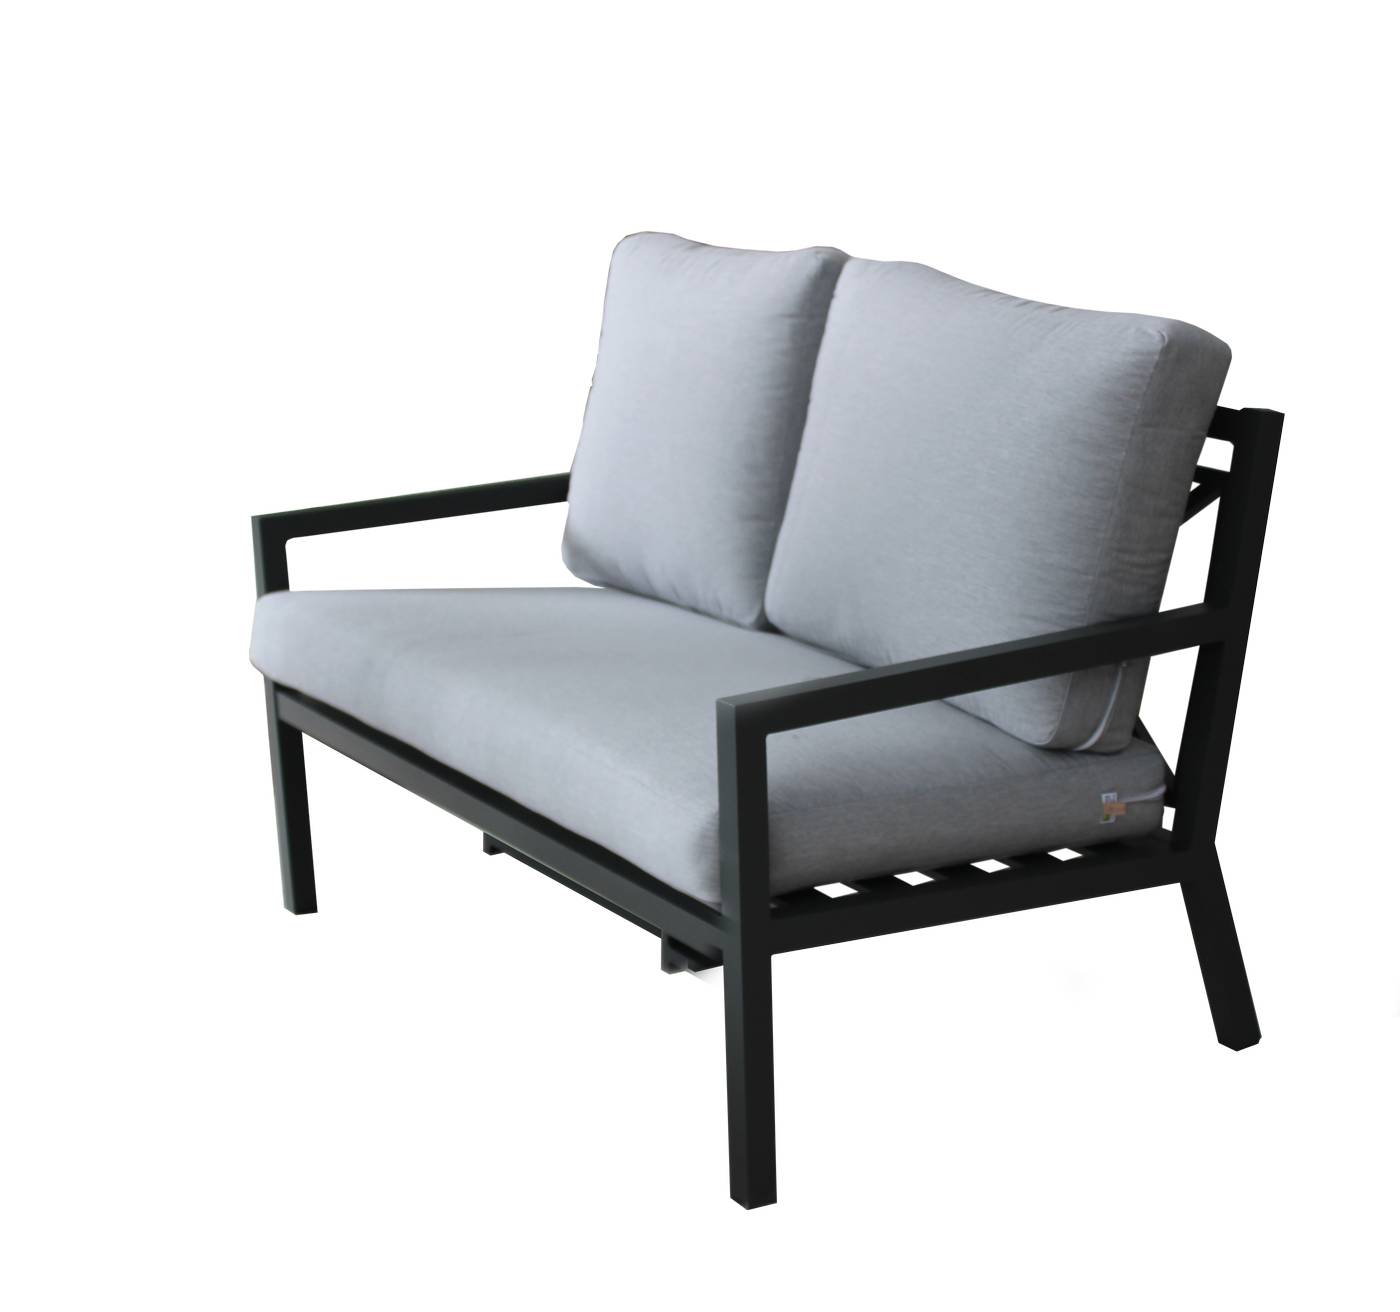 Set Aluminio Luxe Dounvil-9 - Conjunto de aluminio de lujo que incluye: un sofá dos plazas, dos sillones, una mesa de centro,  dos reposapiés y cojines. Estructura aluminio color blanco, antracita, champagne, plata o marrón.